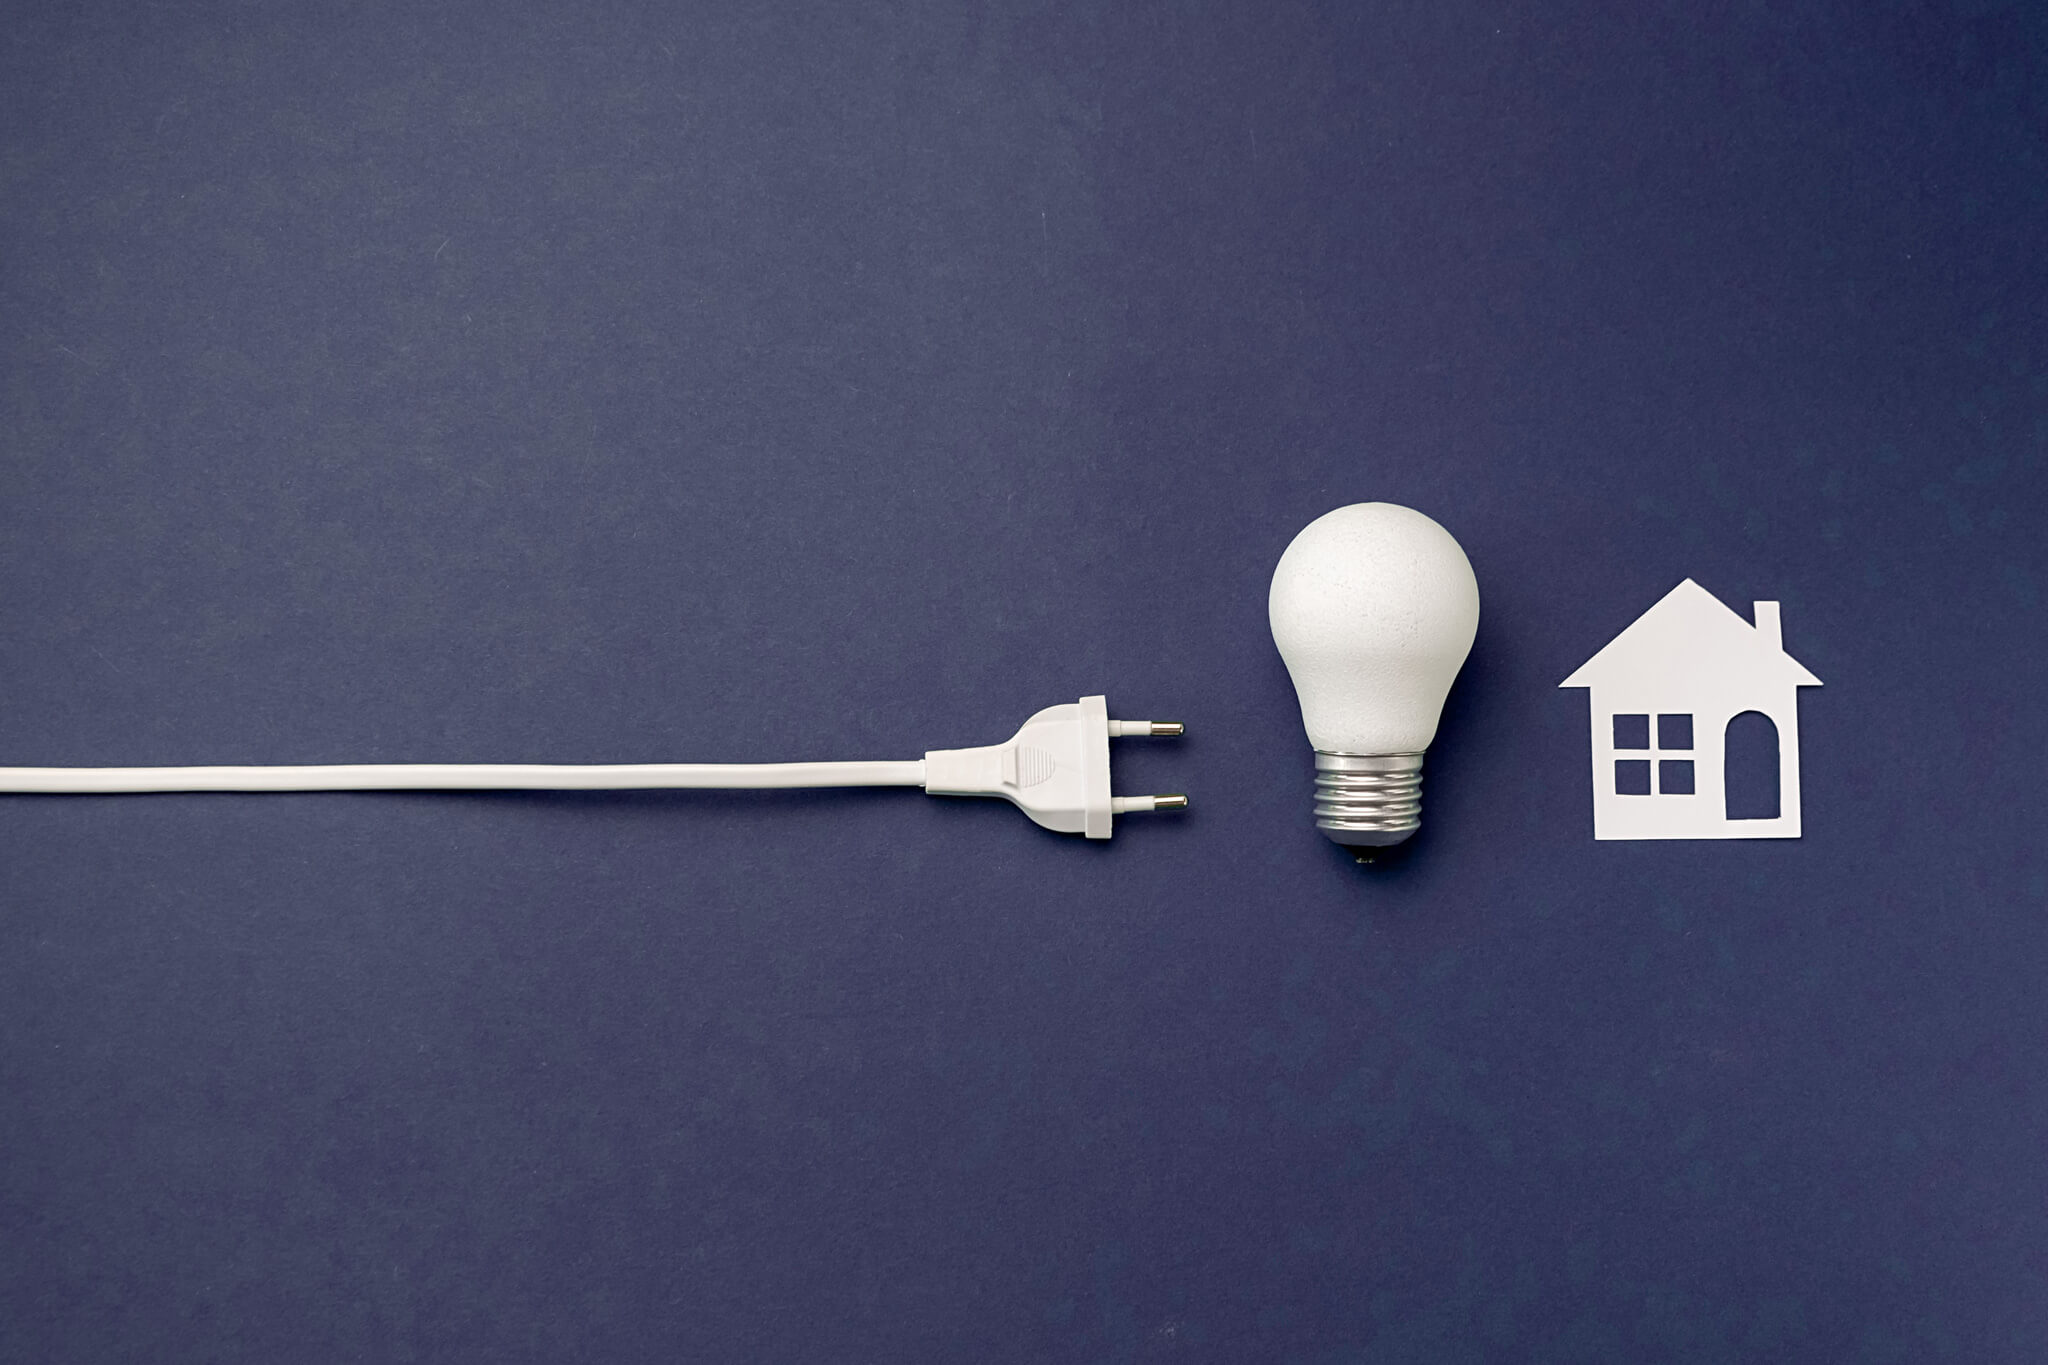 Grafica bianca su sfondo blu di una presa elettrica, una lampadina e disegno di una casa